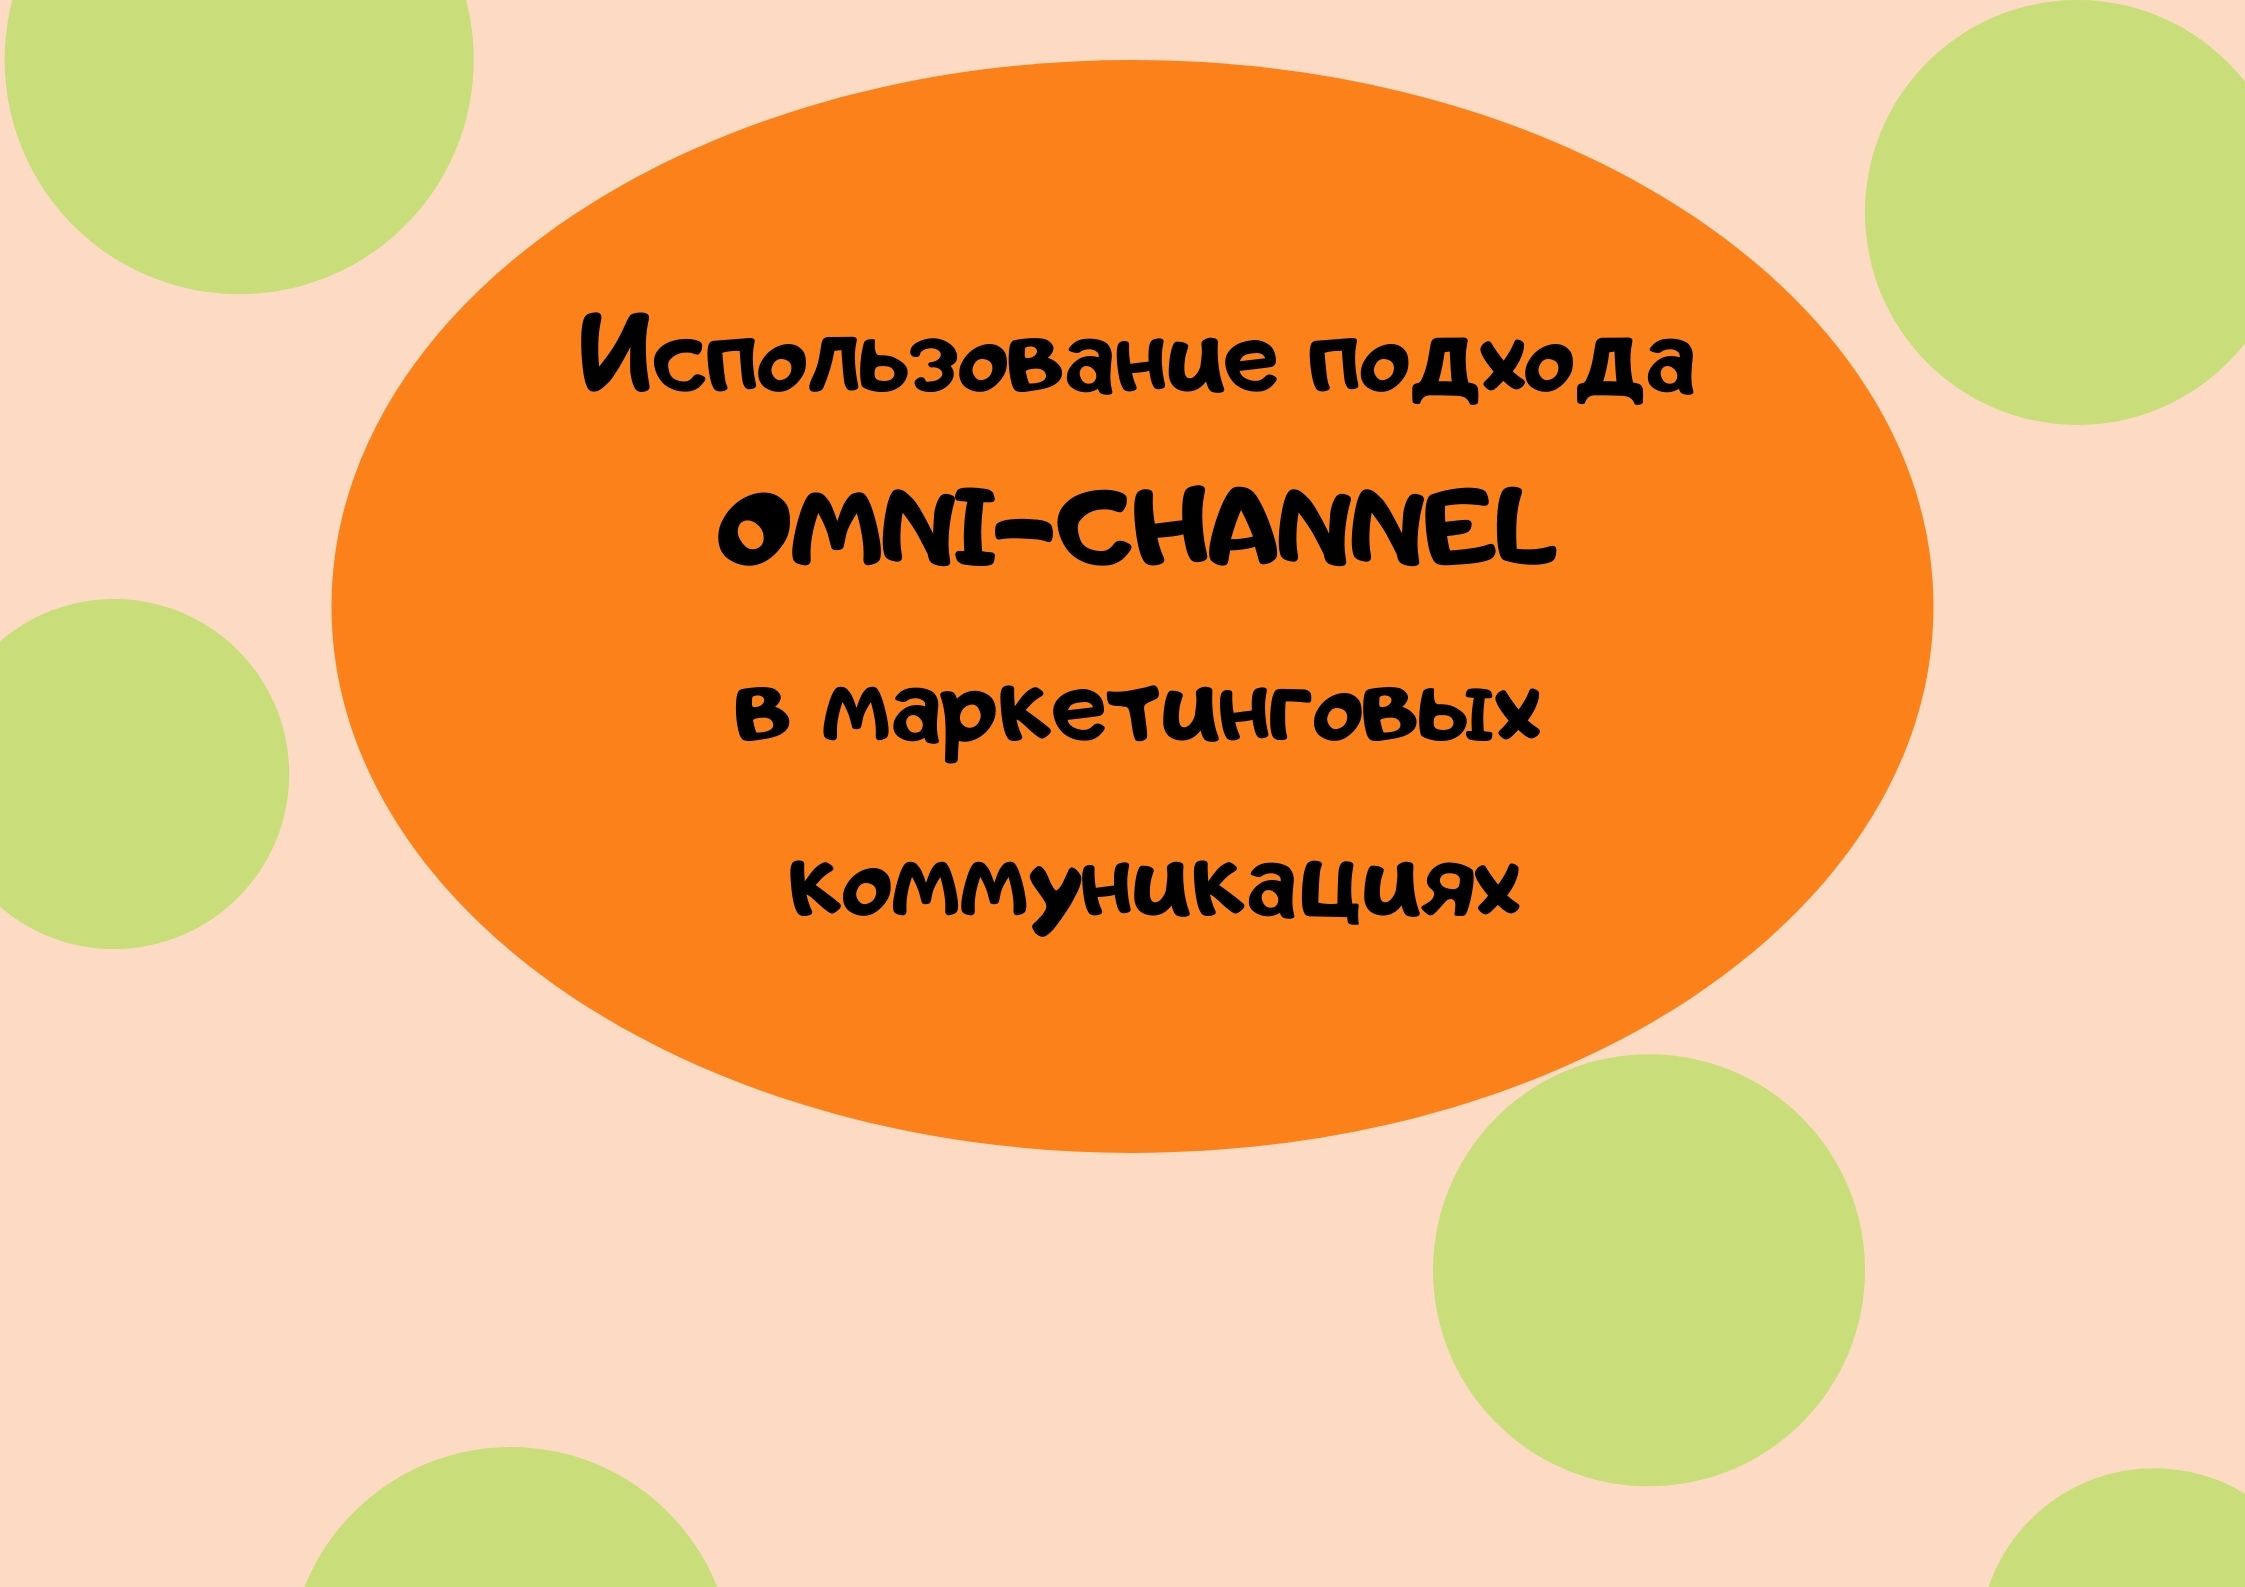 Использование подхода OMNI-CHANNEL в маркетинговых коммуникациях